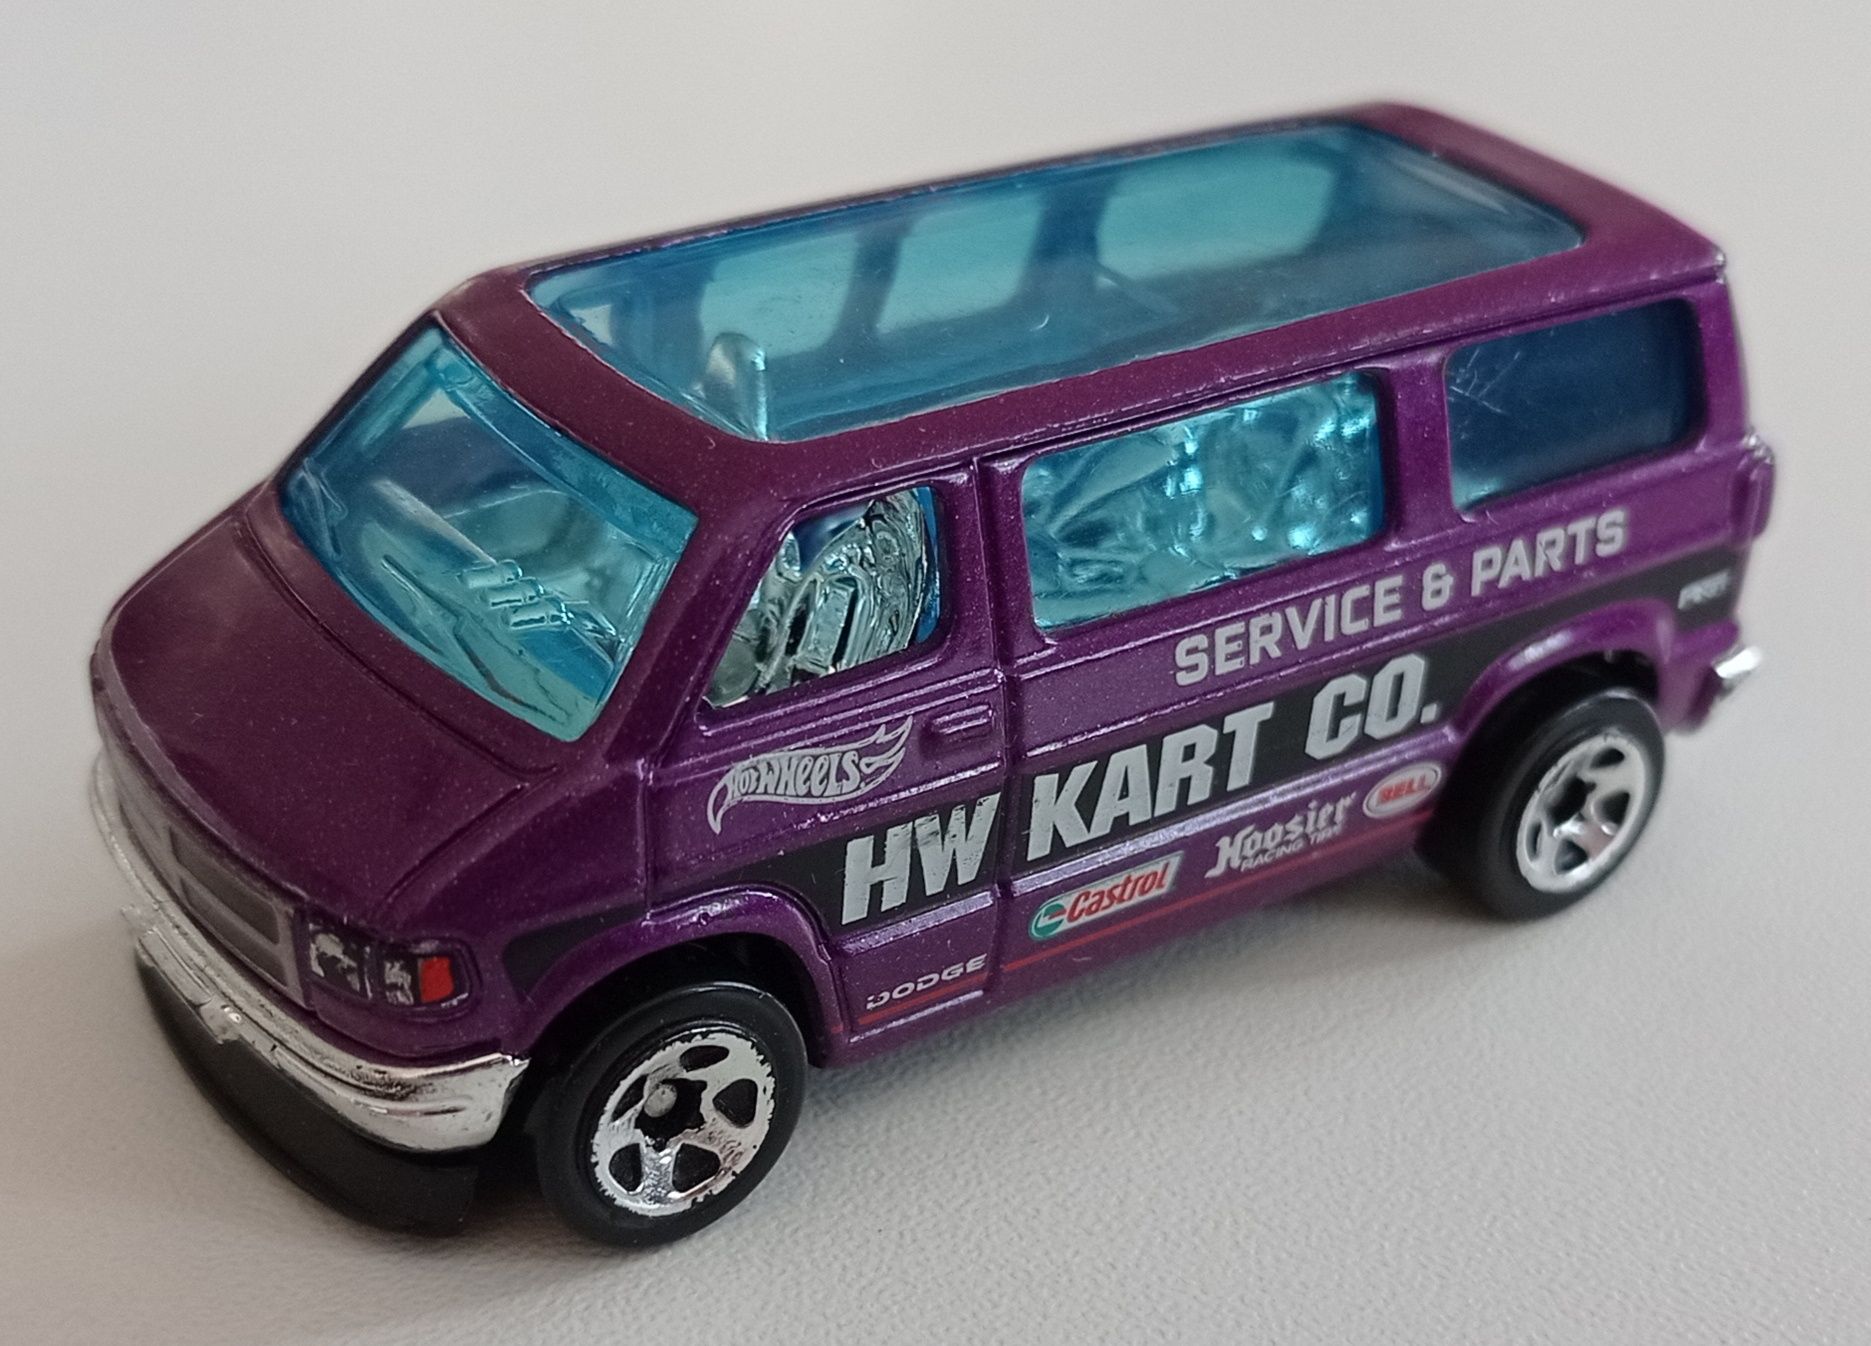 Hot Wheels Dodge Van